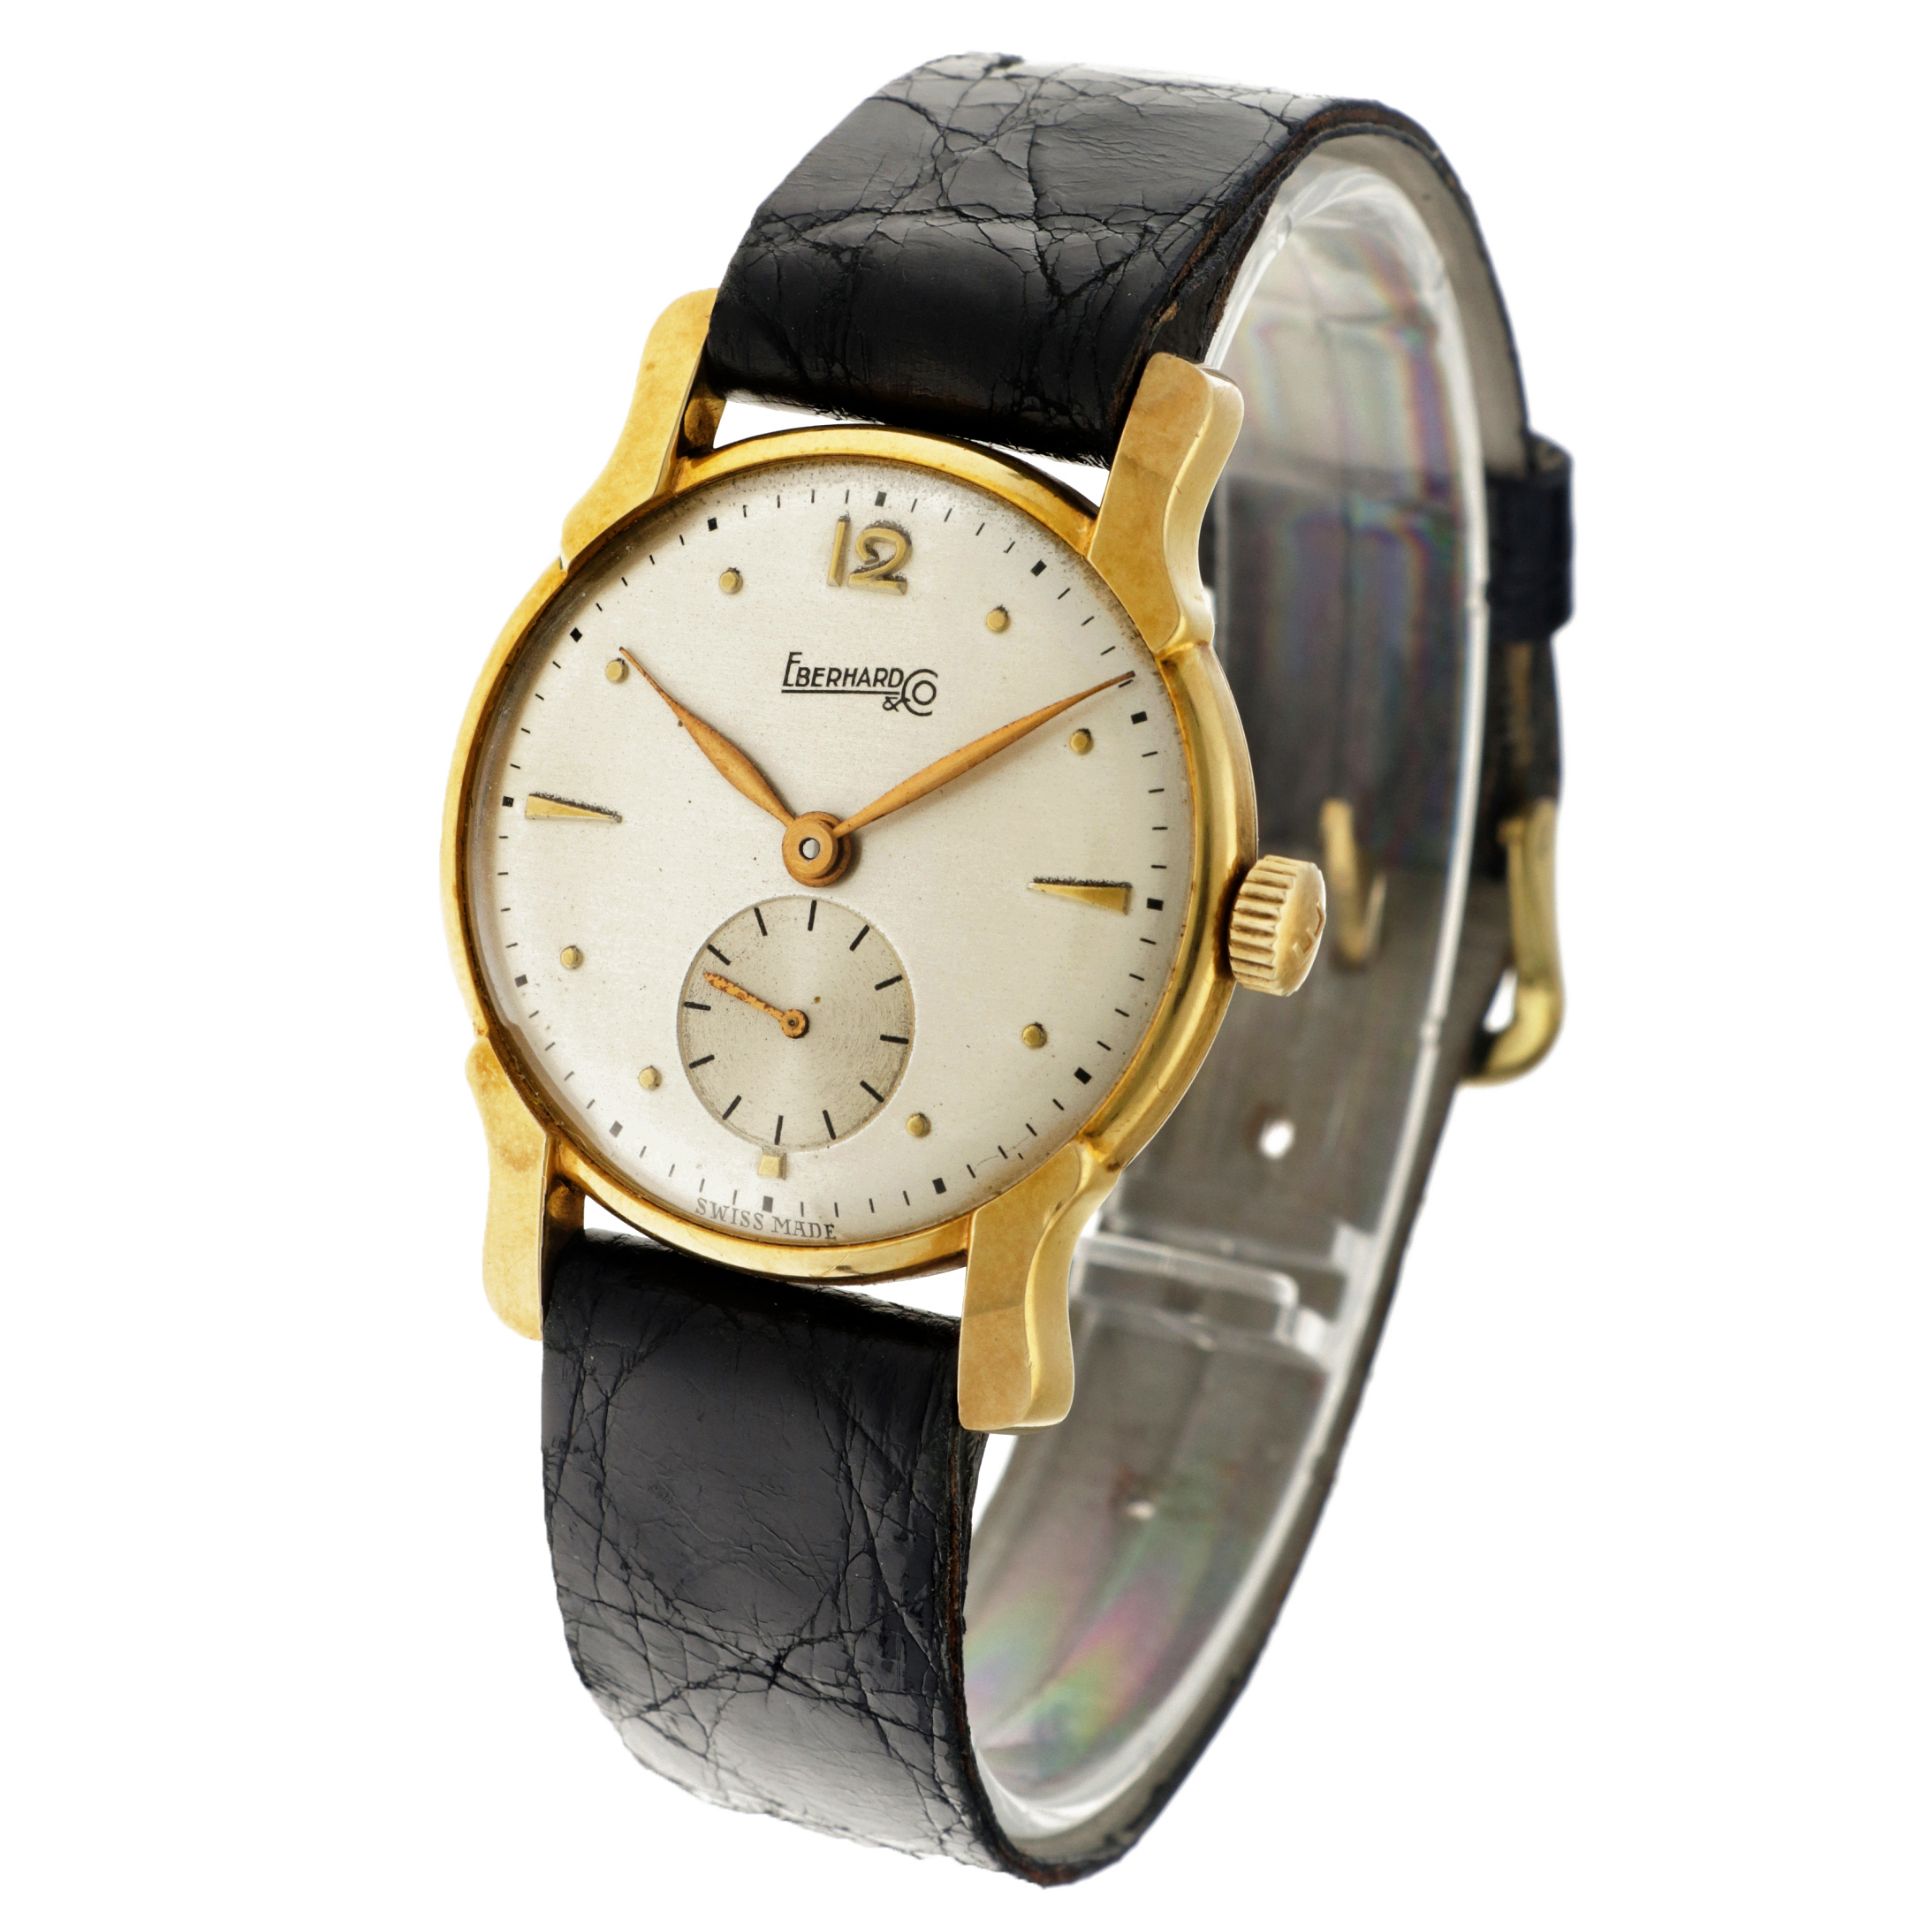 No Reserve -  Eberhard & Co. 18 K. 601446 18 - Men's watch. - Image 2 of 6